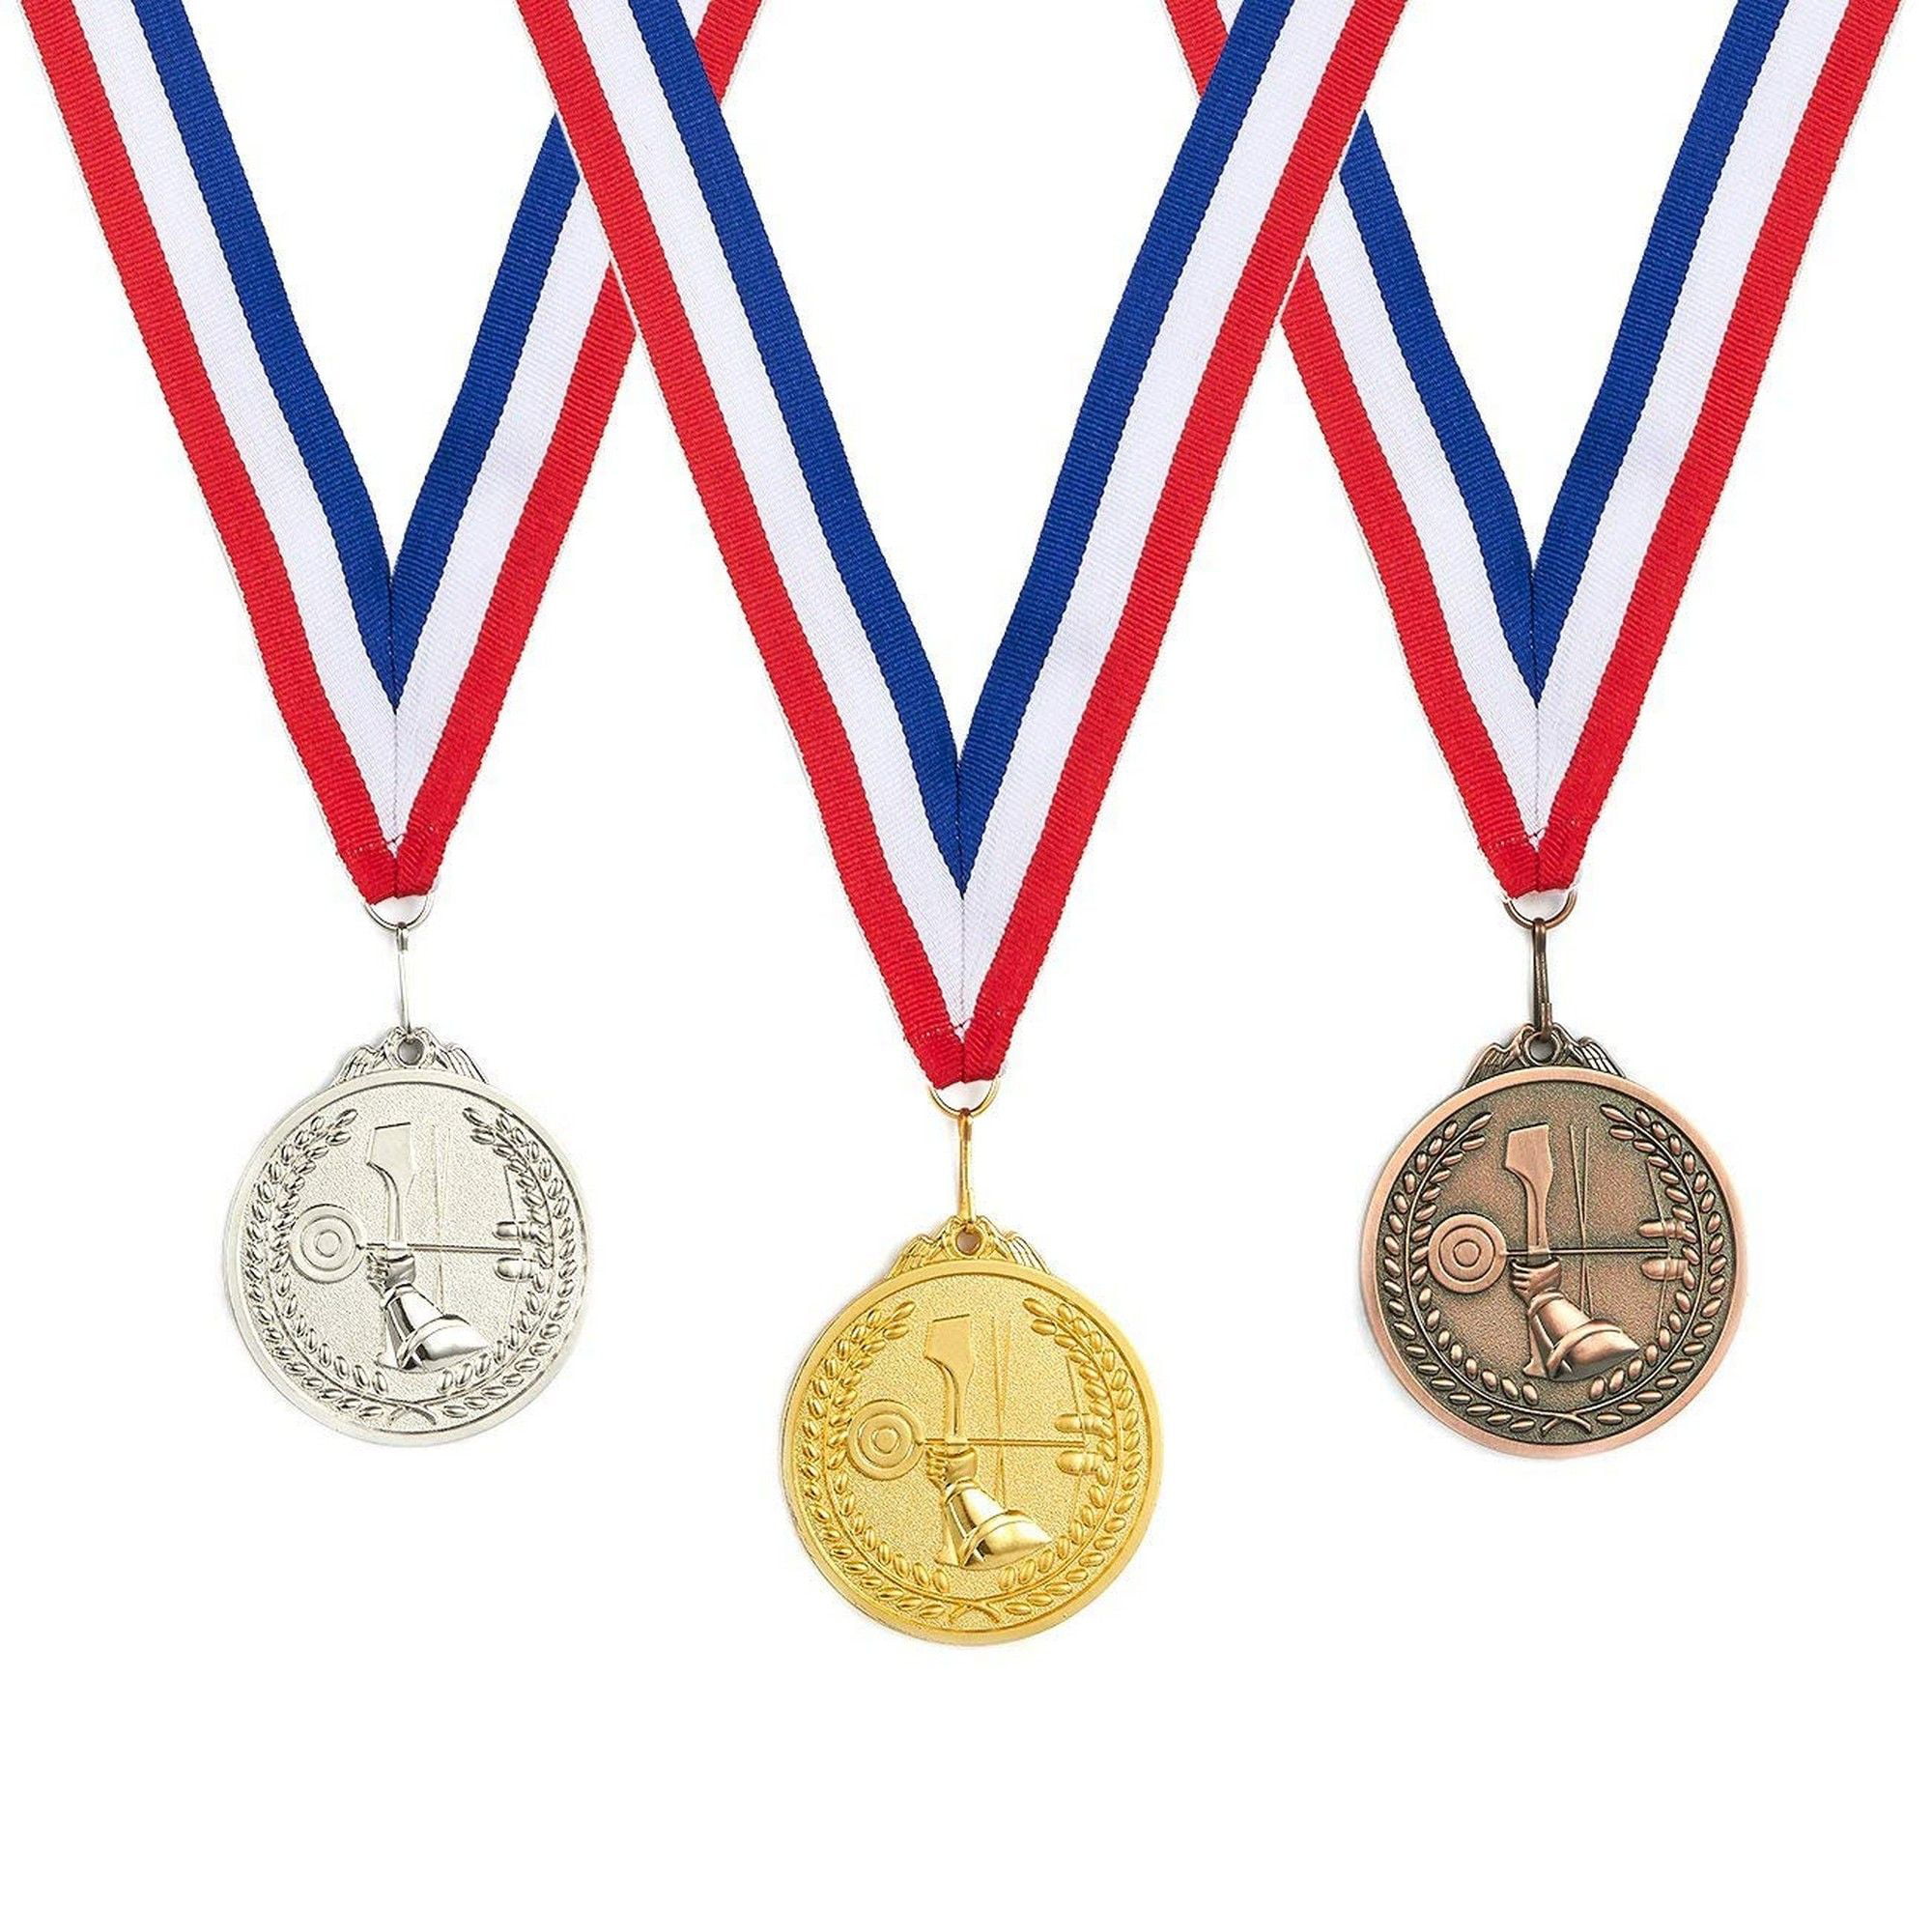 Sporting medals. Медали спортивные. Спортивные награды. Спортивные медали на прозрачном фоне. Медали для детей спортивные.